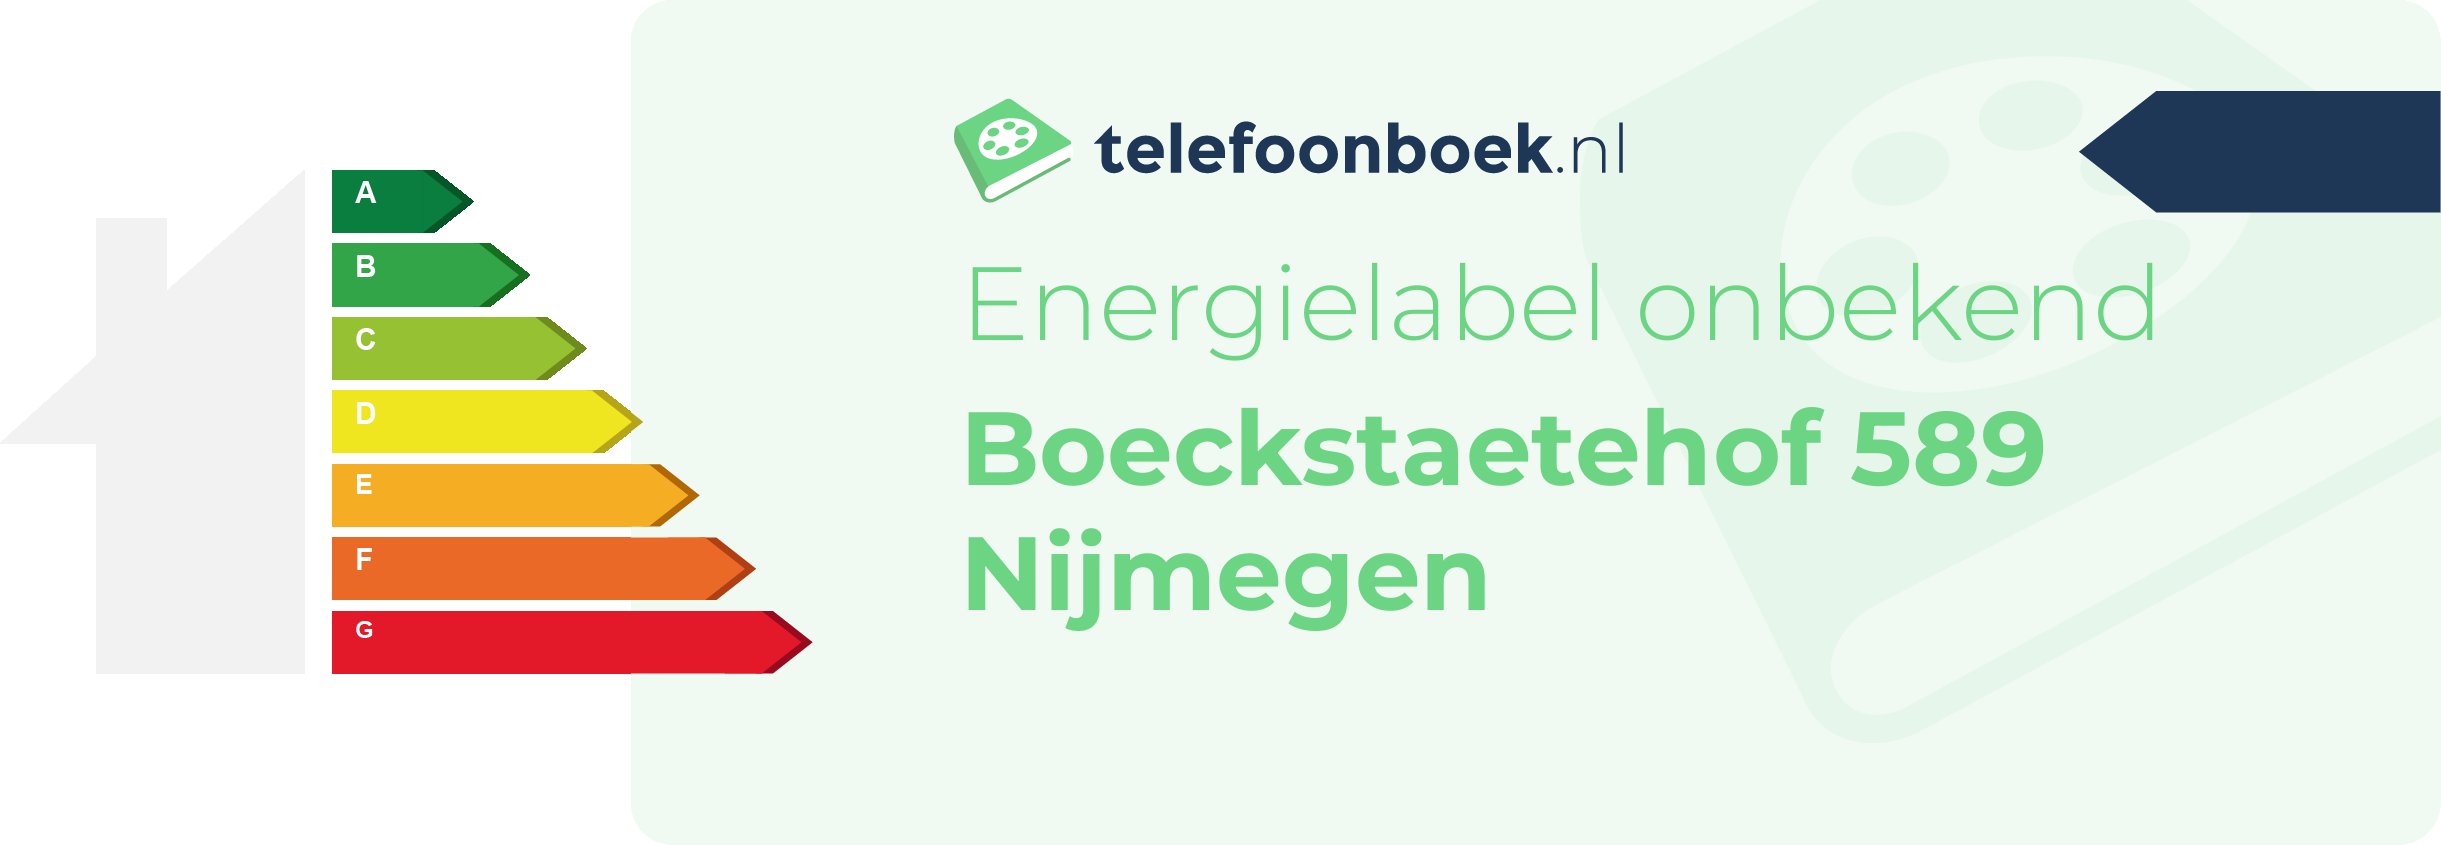 Energielabel Boeckstaetehof 589 Nijmegen